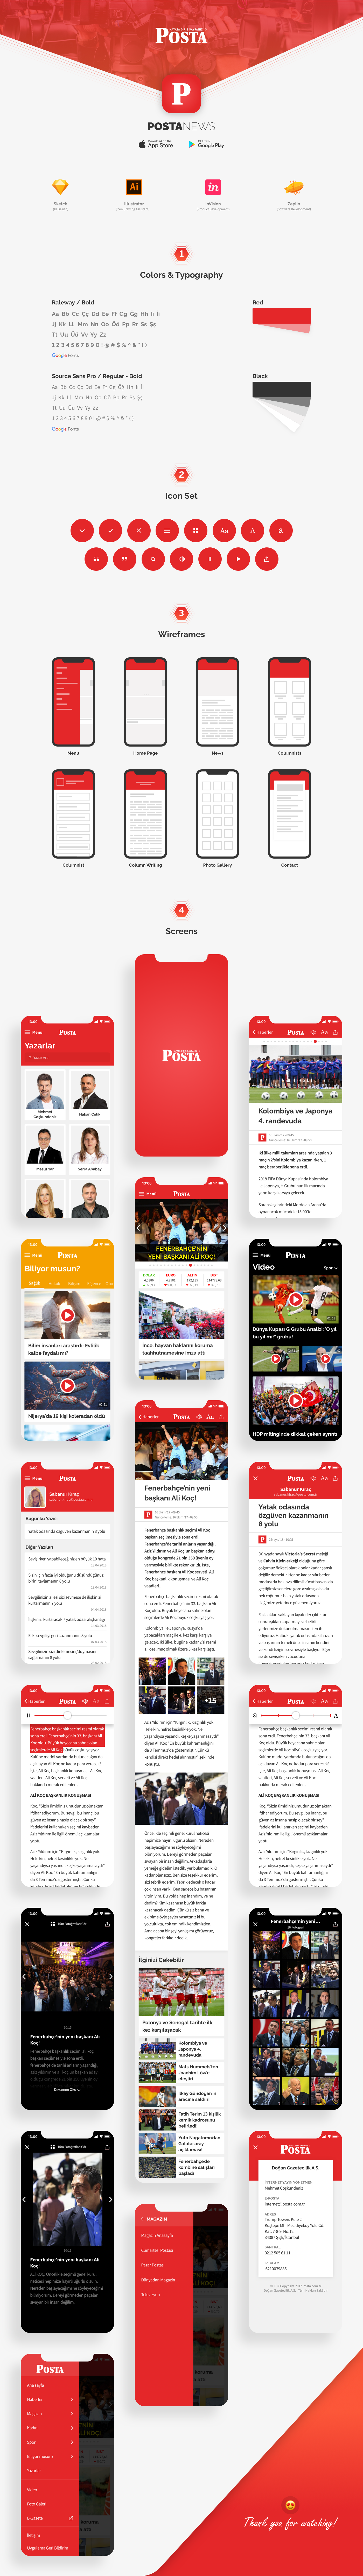 news journalism   newspaper Digital News News App posta POSTA NEWS POSTA GAZETESİ iOS App UI